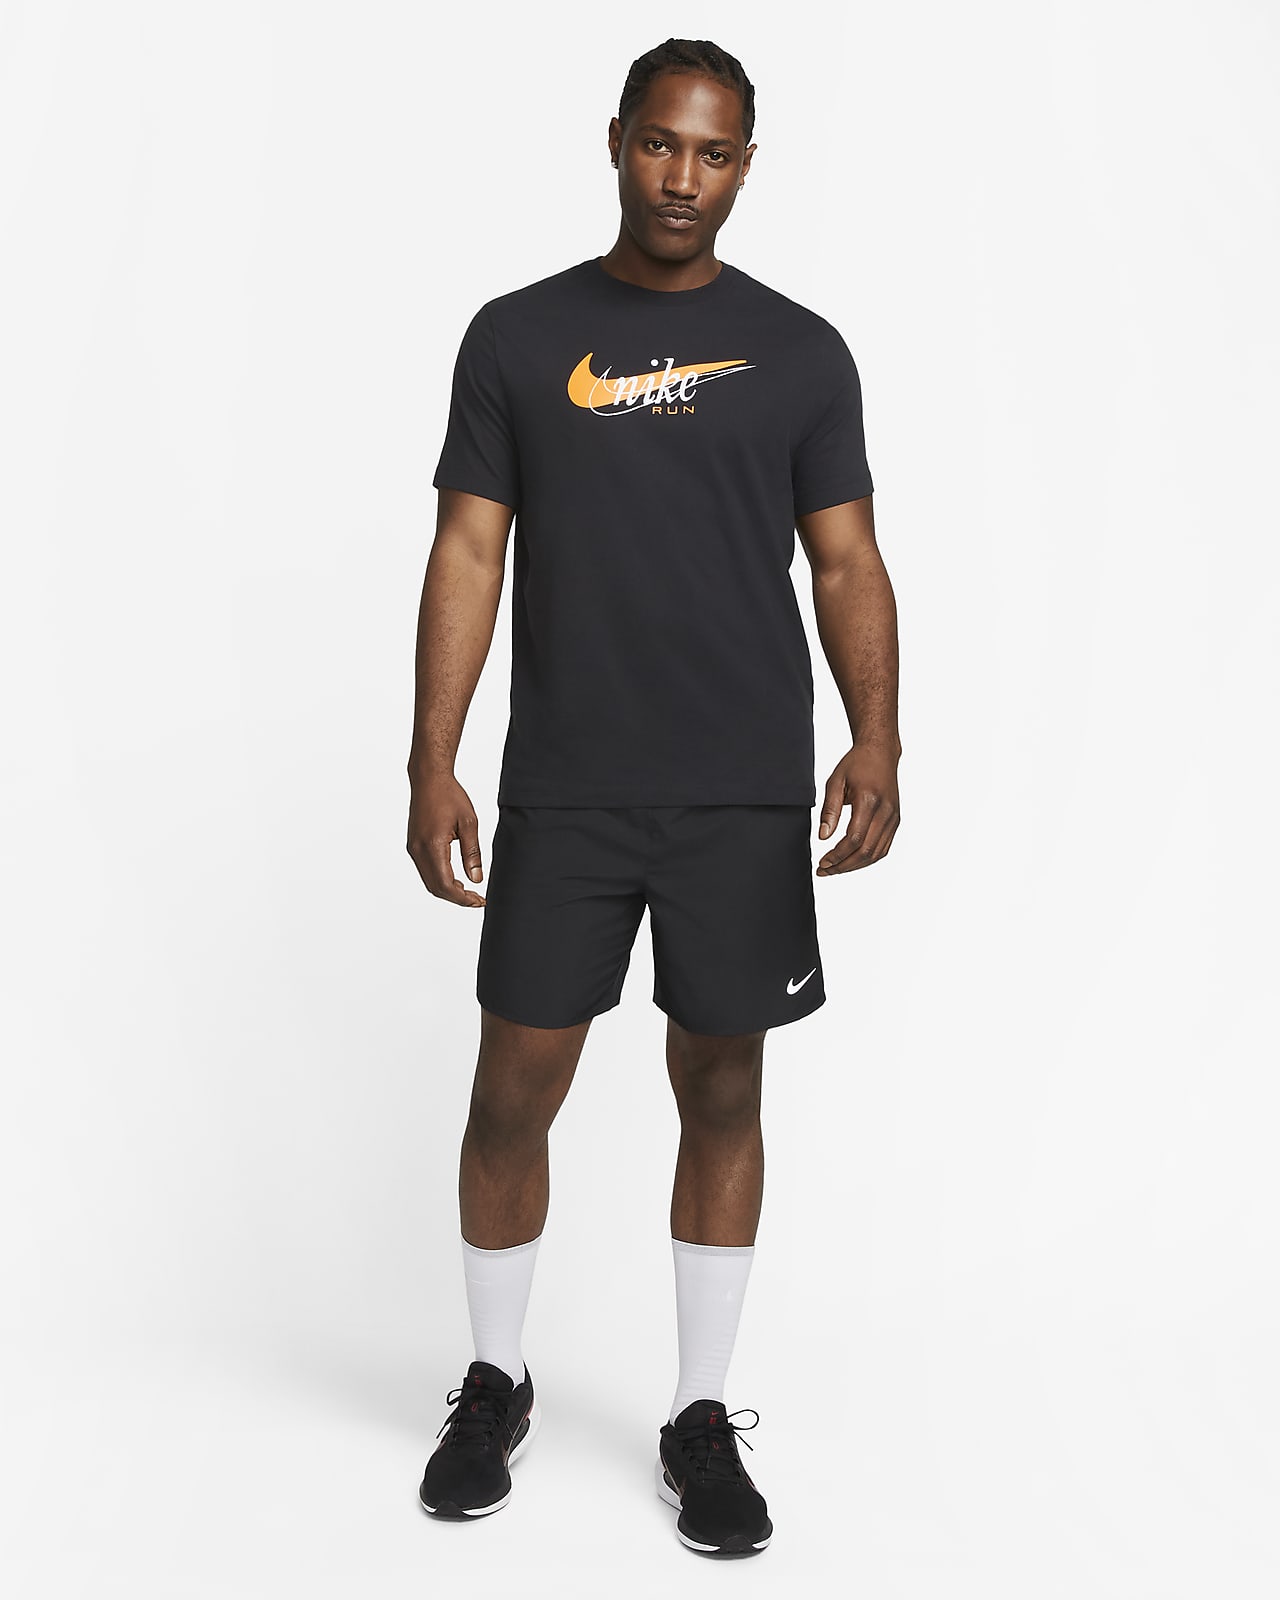 Nike til Nike DK